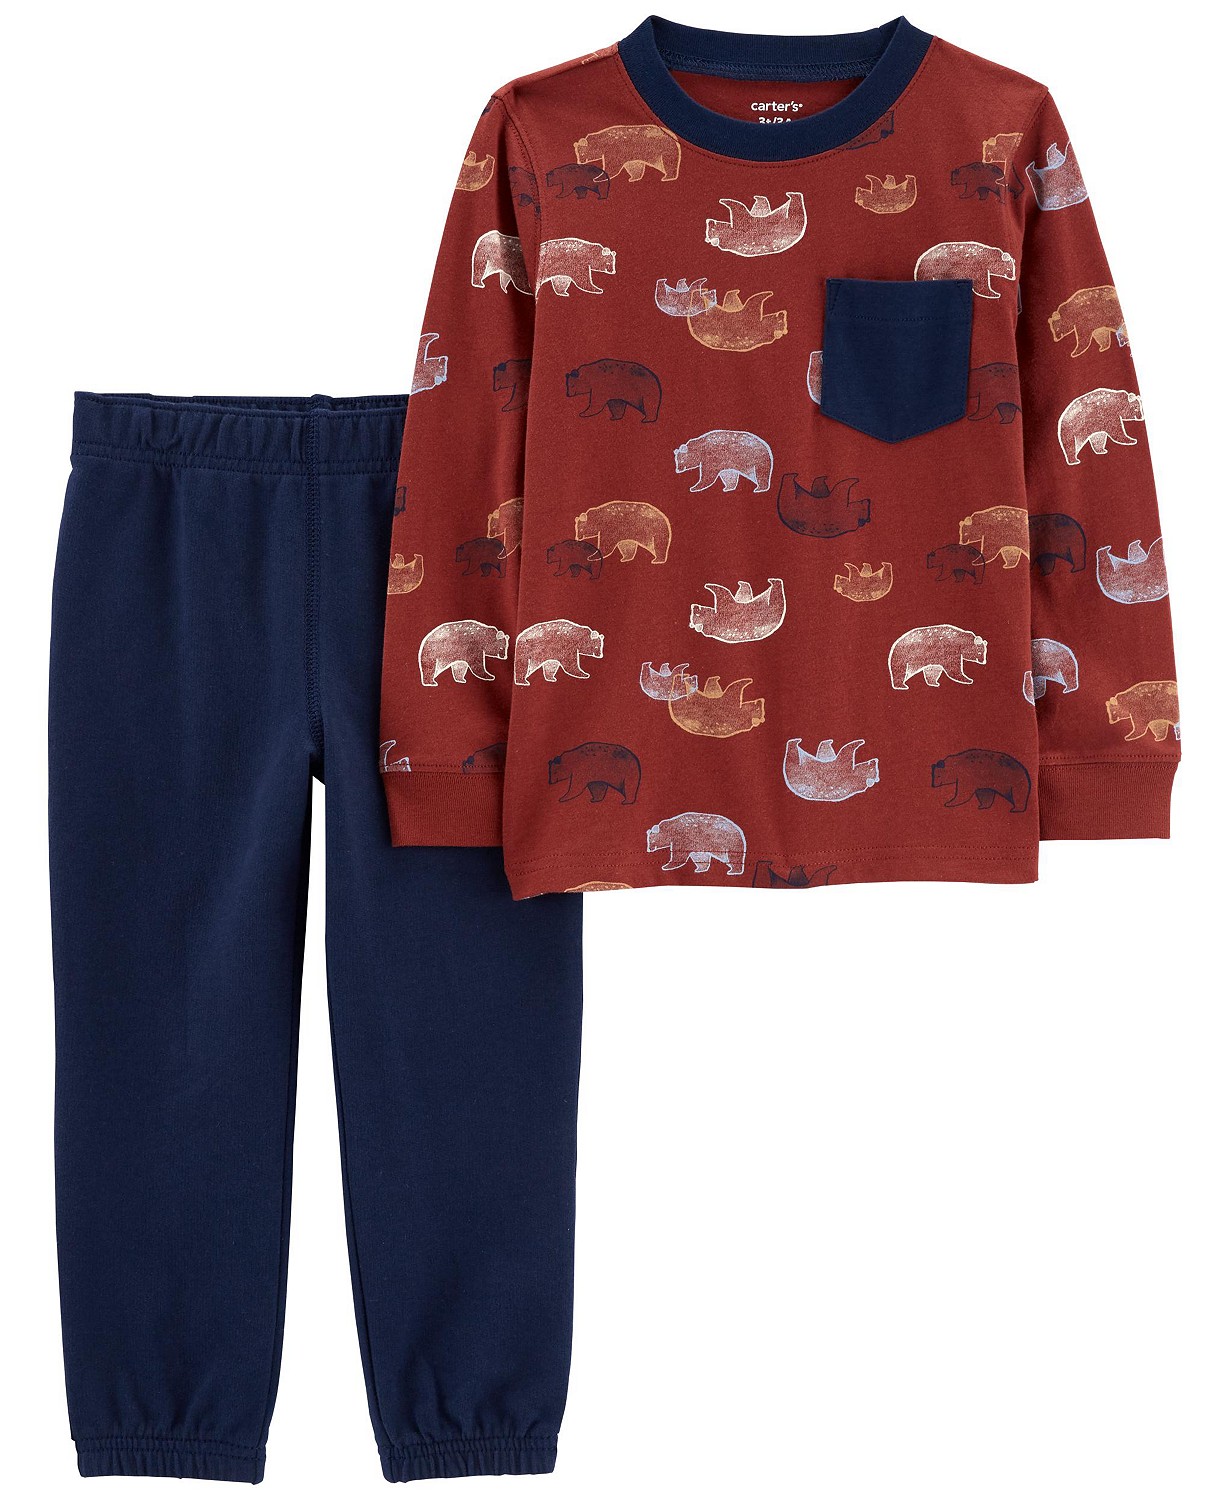 Toddler Boys Bear T-shirt and Joggers, 2 Piece Set